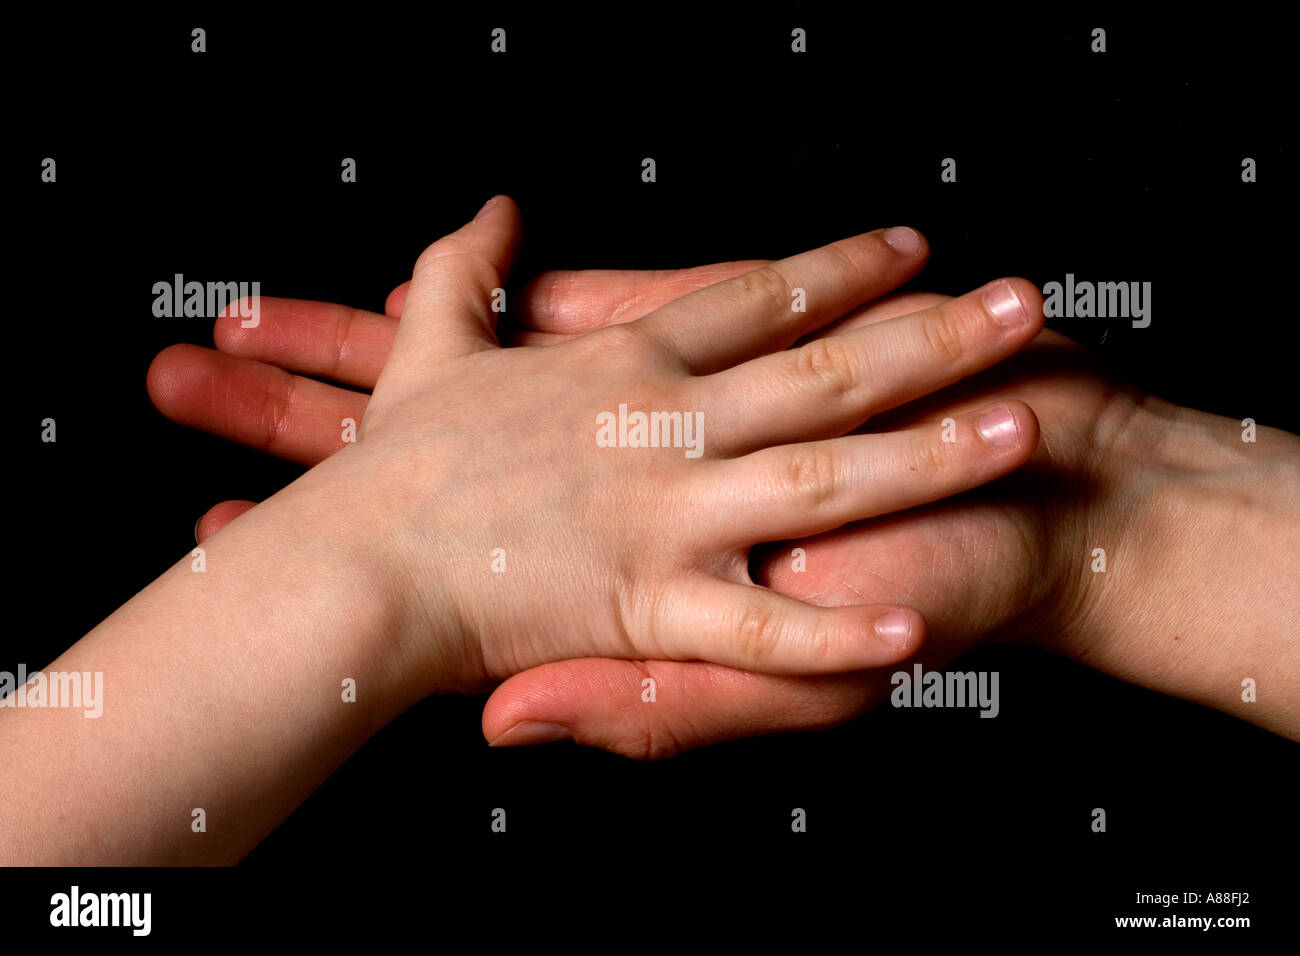 Erwachsenen Hand hält infantilen Hand auf schwarzem Hintergrund Stockfoto